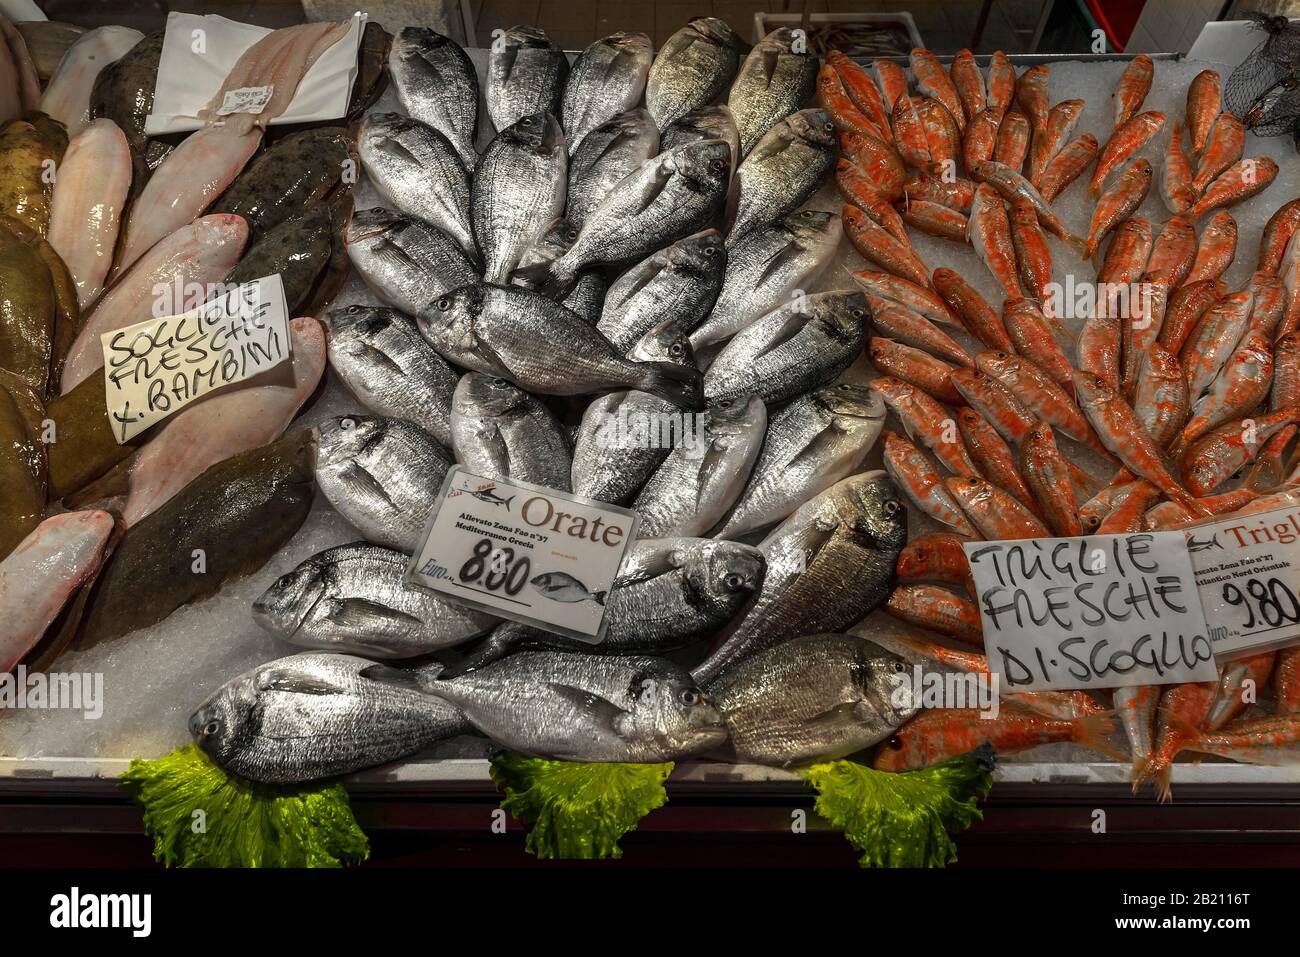 Dorada fresca (Bramidae) Muletas derechas (Mugilidae), lenguado común izquierdo (Solea solea) sobre hielo, mercado de pescado Venecia, Veneto, Italia Foto de stock